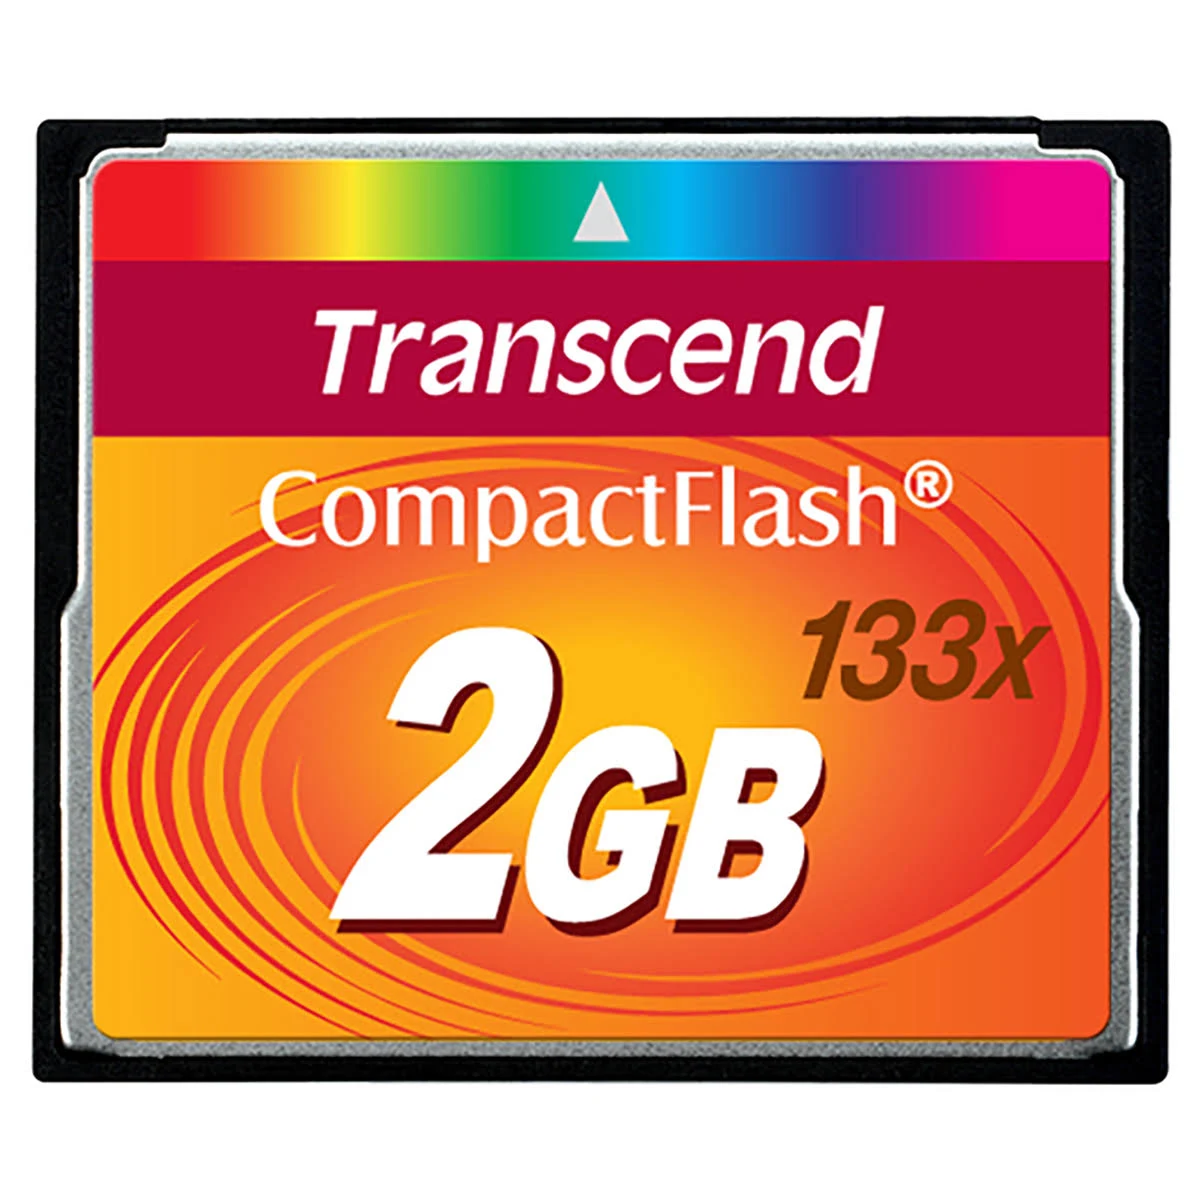 MB/s Speicherkarte, m0000BIP8I, TRANSCEND Flash GB, Compact 20 2